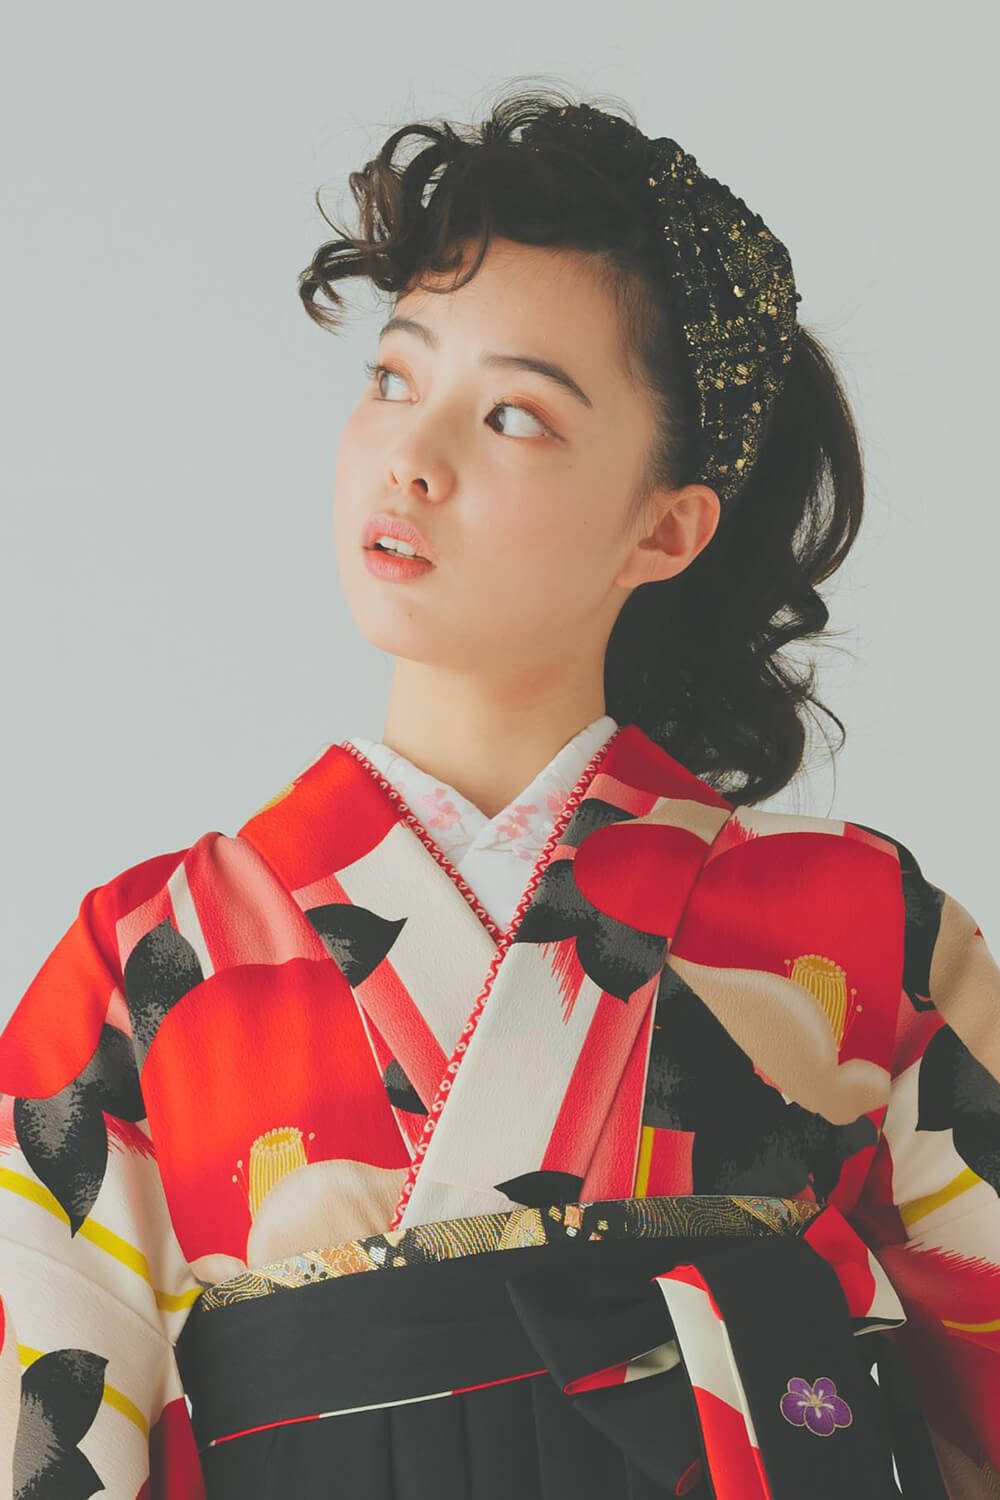 レトロな椿柄のレンタル袴に似合うヘアスタイル